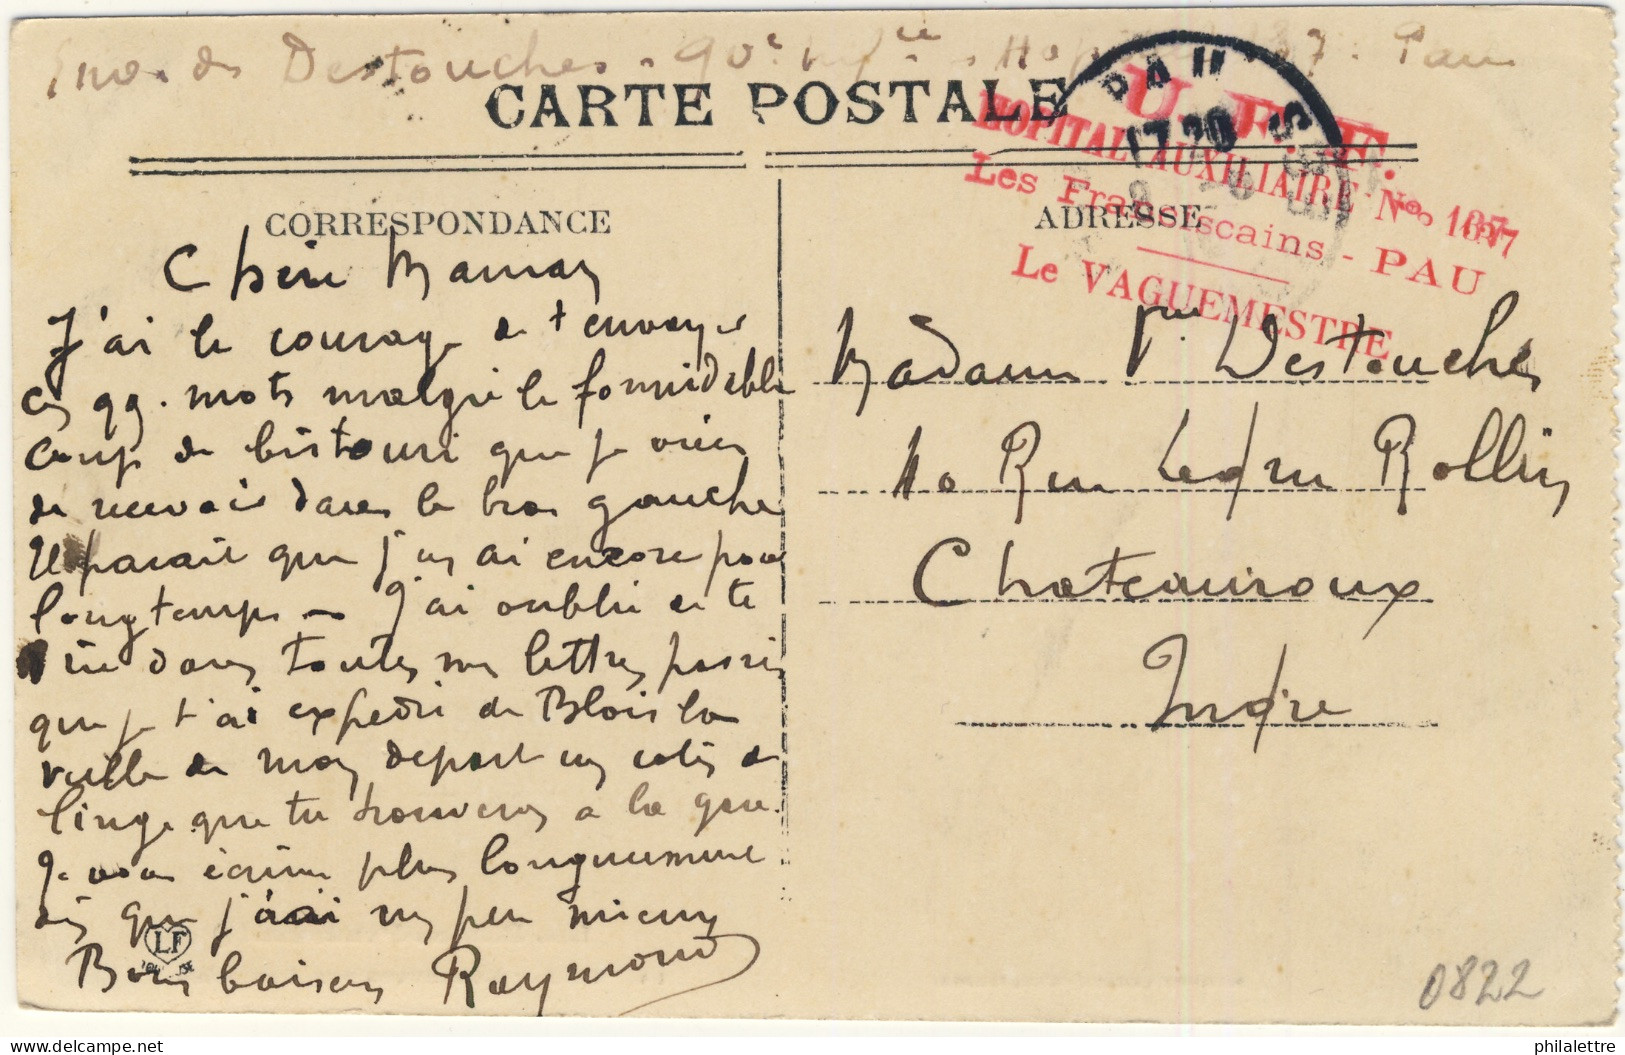 FRANCE - 191? - Cachet De L'Hôpital Auxiliaire N°137 "Les Franciscains" De PAU Sur CPA Pour Châteauroux, Indre - Guerra Del 1914-18